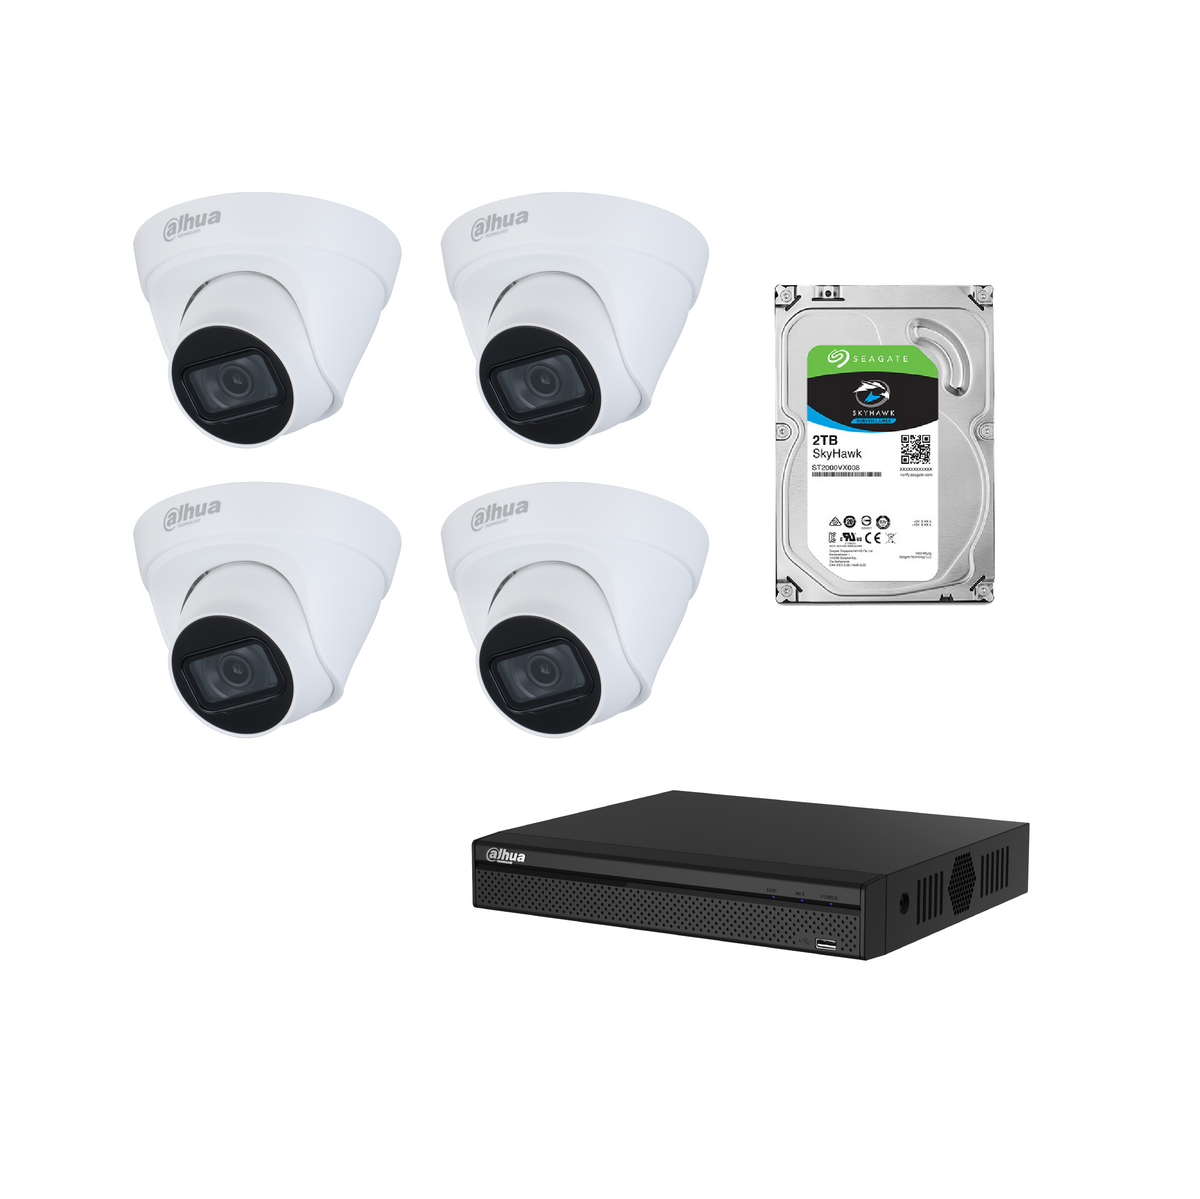 Dahua 4MP CCTV Kit: NVR 4104 HS *1 HDW 1431 T1 *4 Harddrive 2T *1